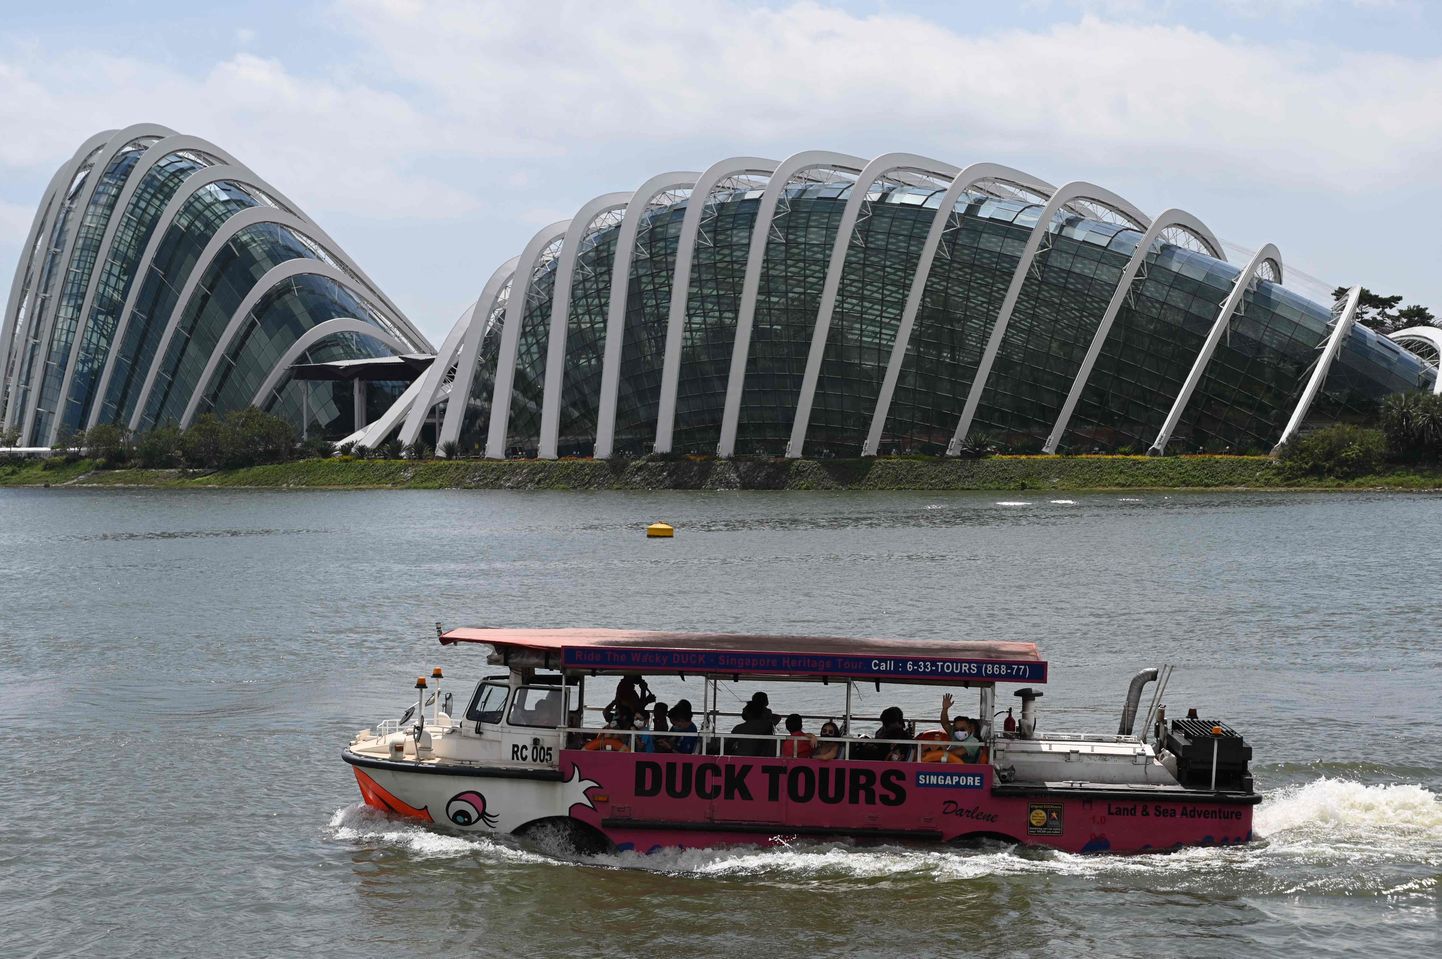 Väikse rühm turiste reisikorraldaja Duck Tours amfiibsõidukiga Singapuri lahel 28. detsembril 2020